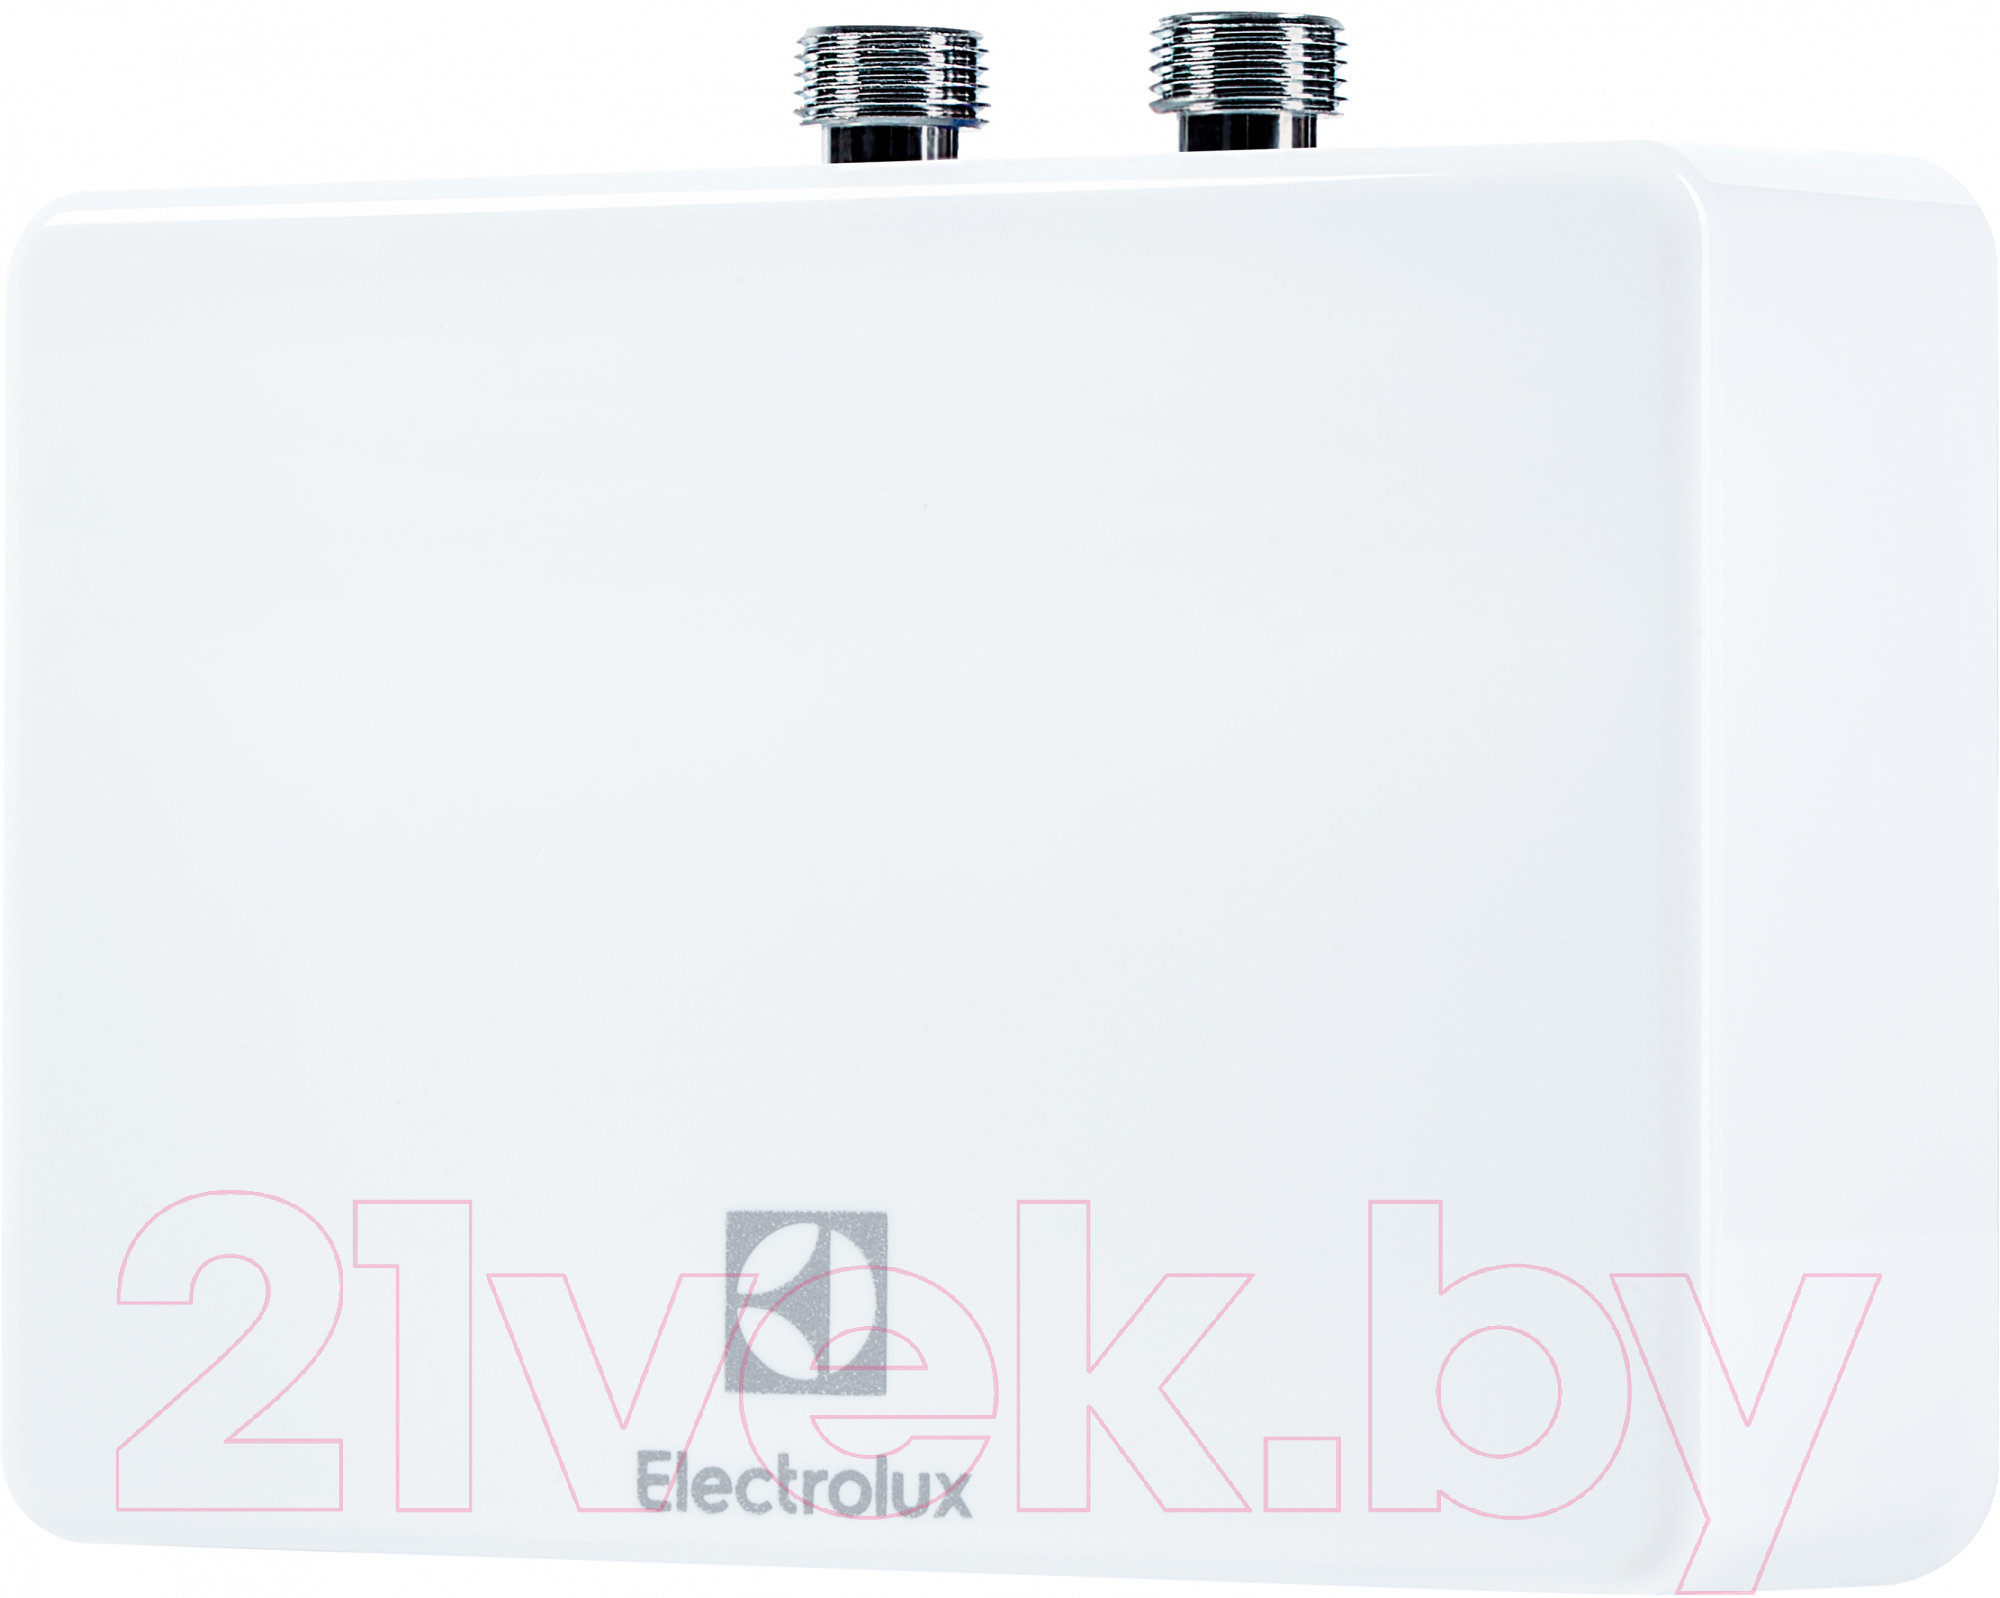 Электрический проточный водонагреватель Electrolux NP 4 Aquatronic 2.0